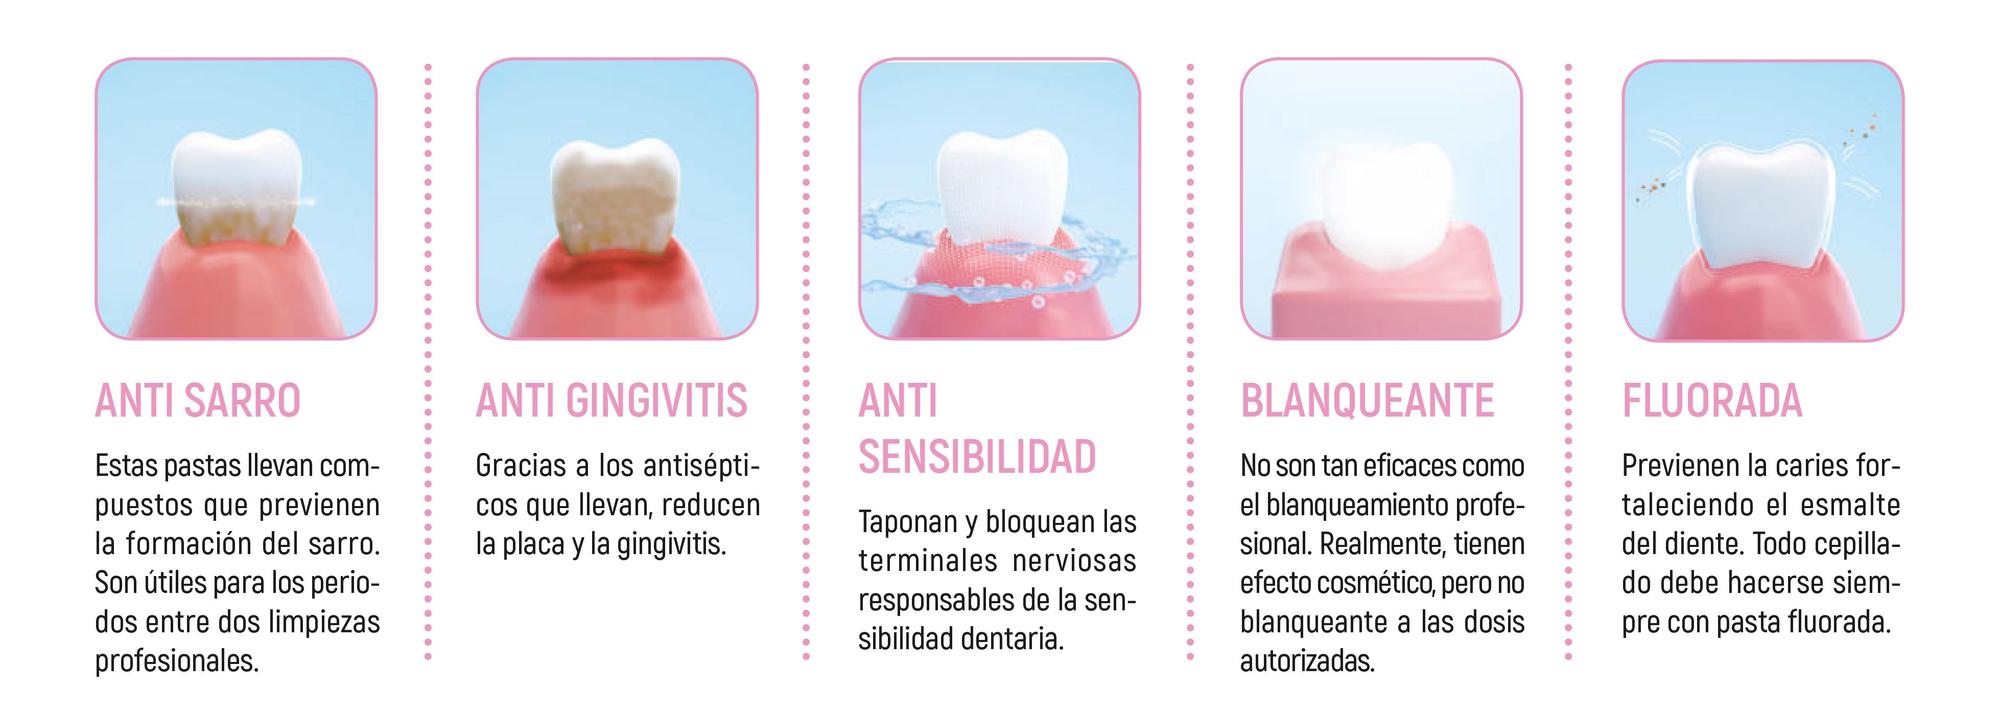 Algunas pastas de dientes son específicas para tratar problemas de salud bucodental concretos.